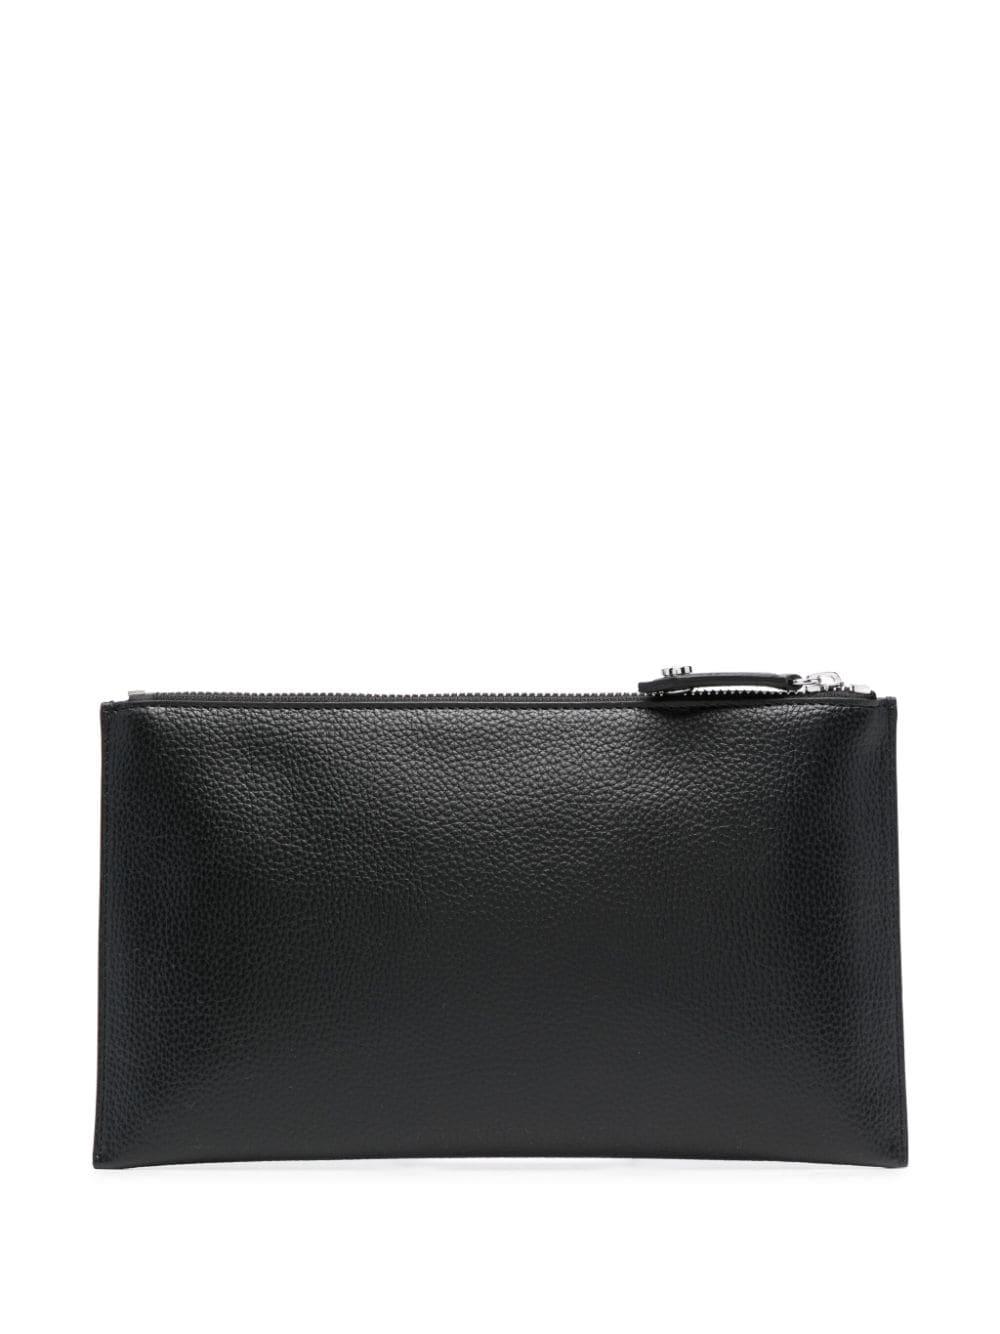 Vivienne Westwood Orb-plaque zipped pouch - Black